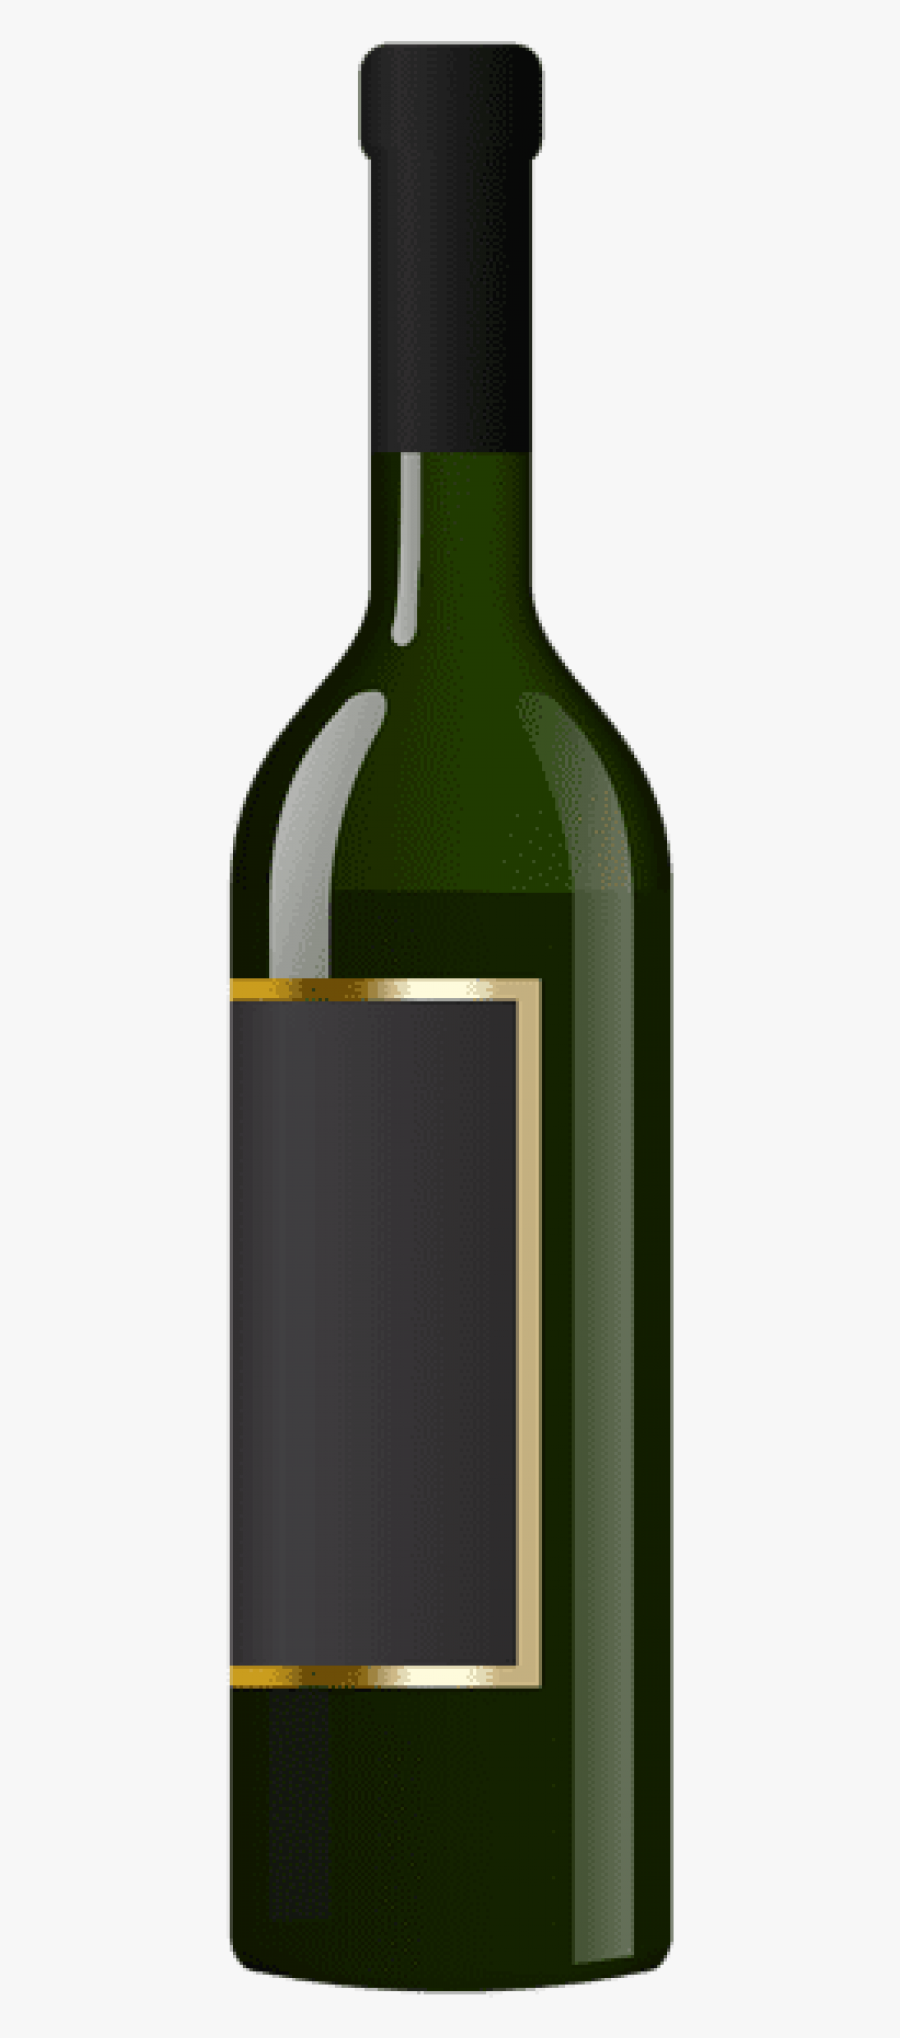 Wine Clip Transparent - Wine Bottle Clipart Transparent, Transparent Clipart